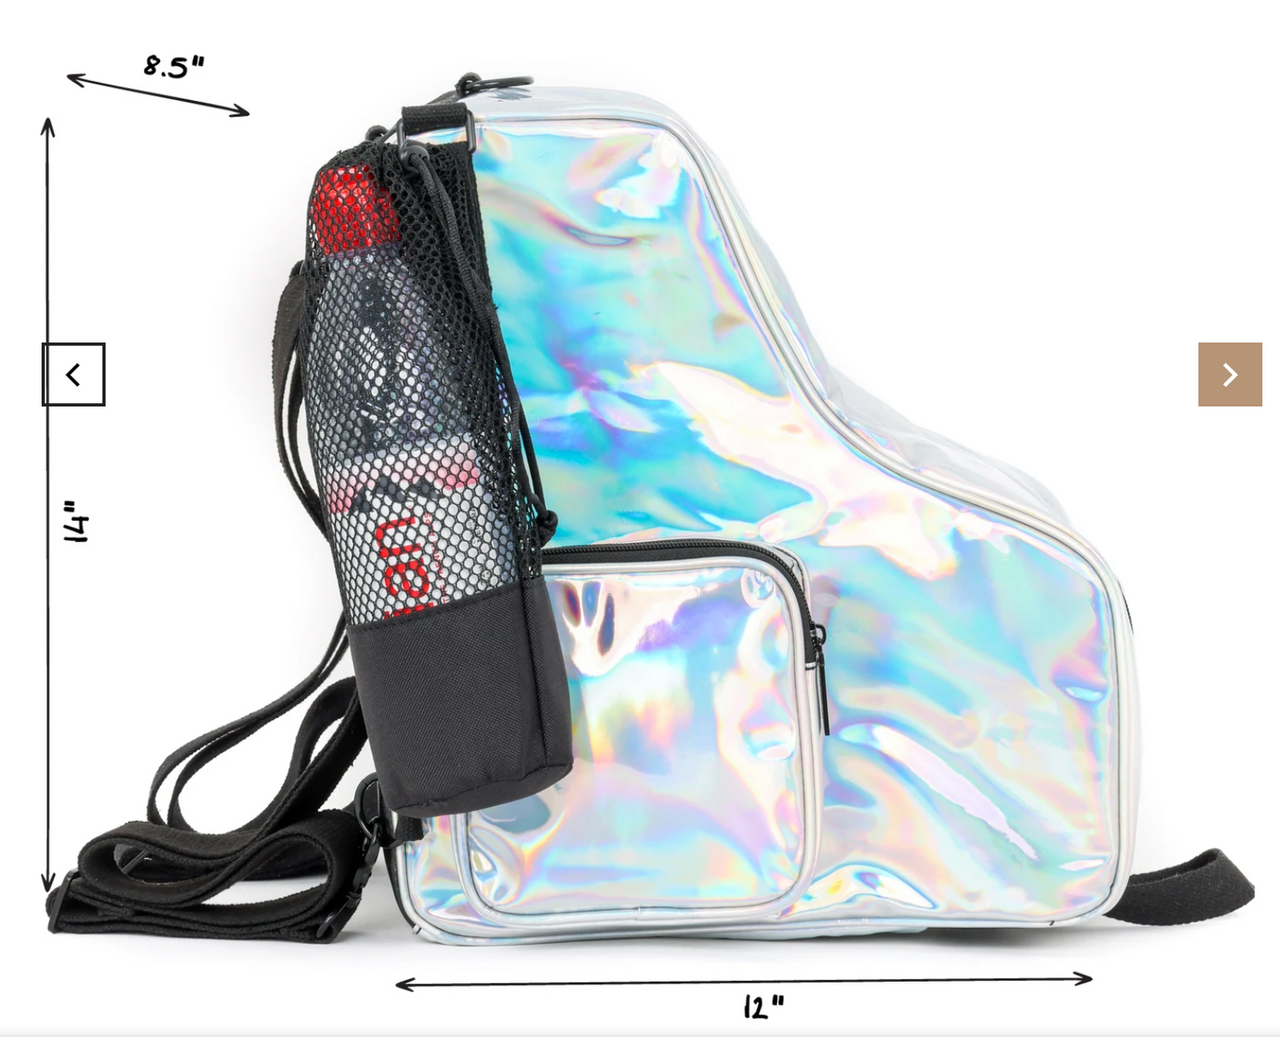 reewheelin' Roller Skate Crossover Bag-Pack - Glam Glitter Rainbow Black